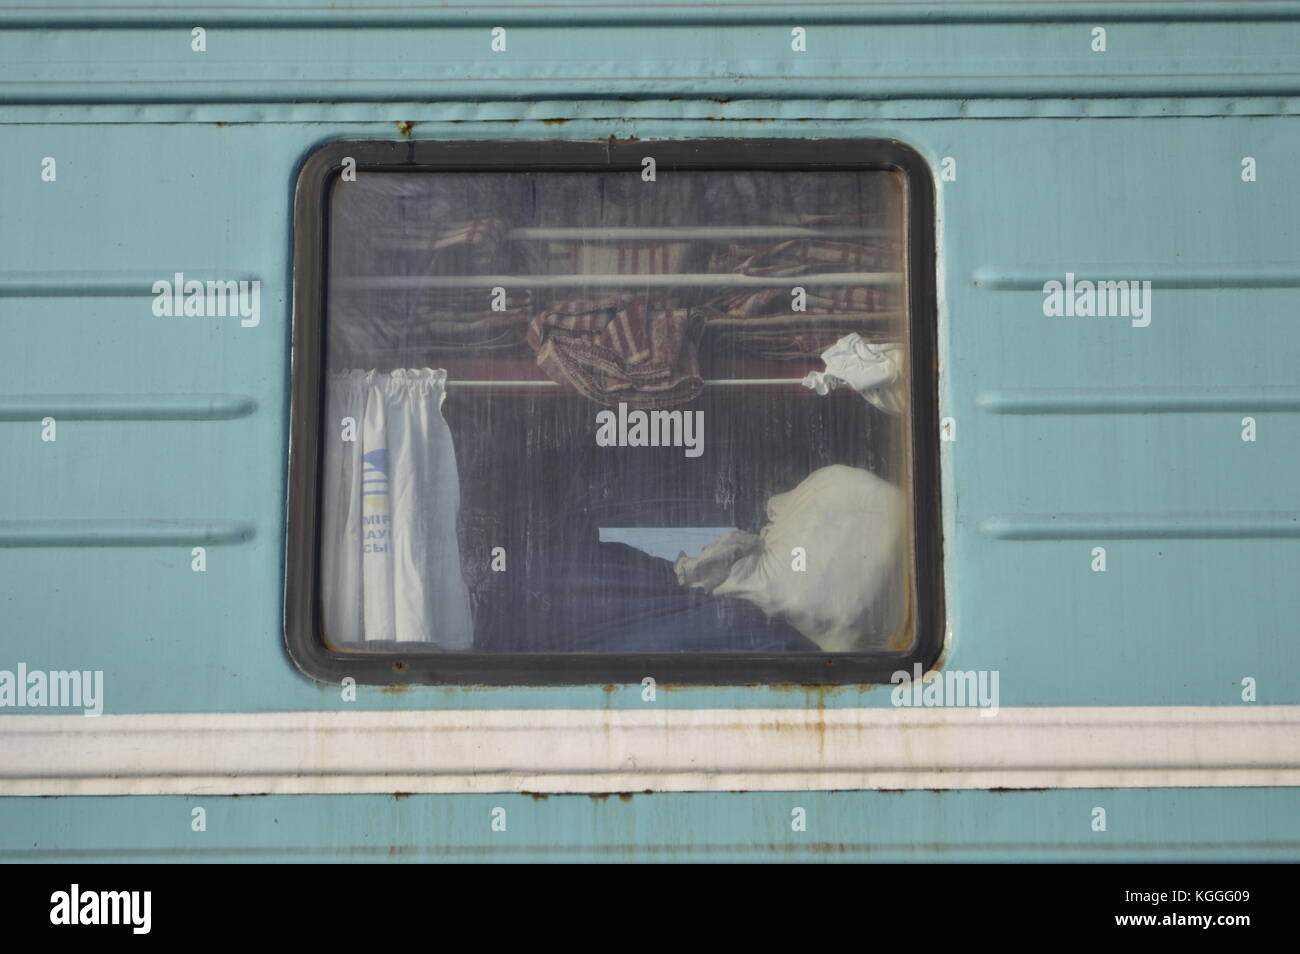 Ventana de un tren ruso azul / verde desde el exterior, mantas, bolsas y cortinas visibles. Foto de stock